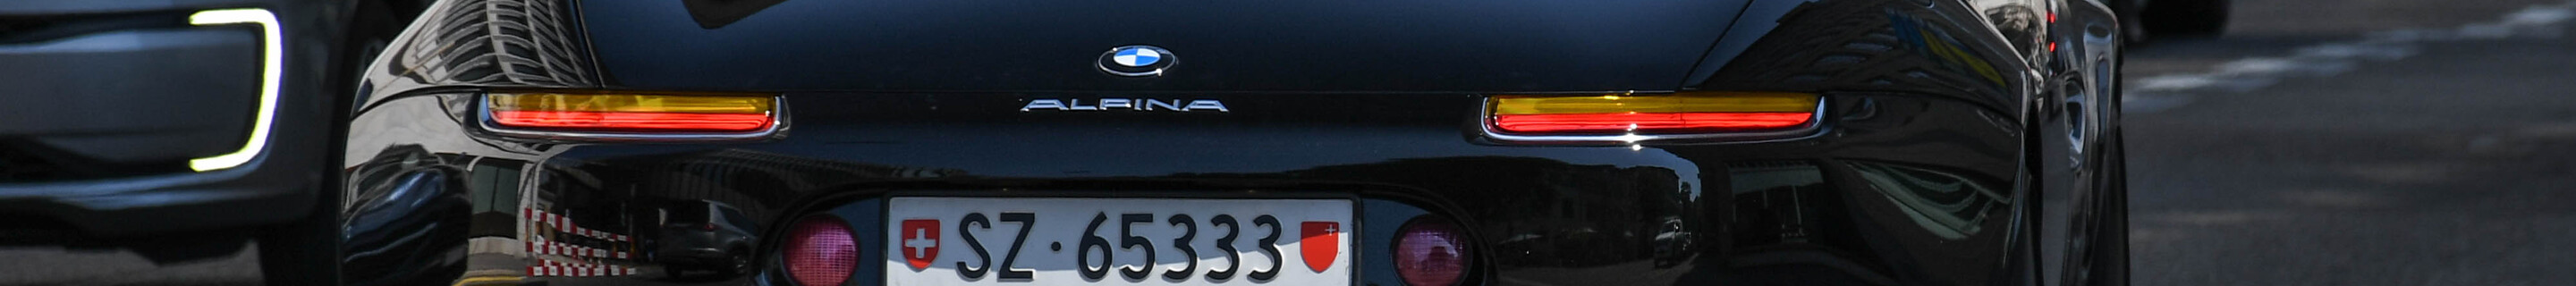 Alpina Roadster V8